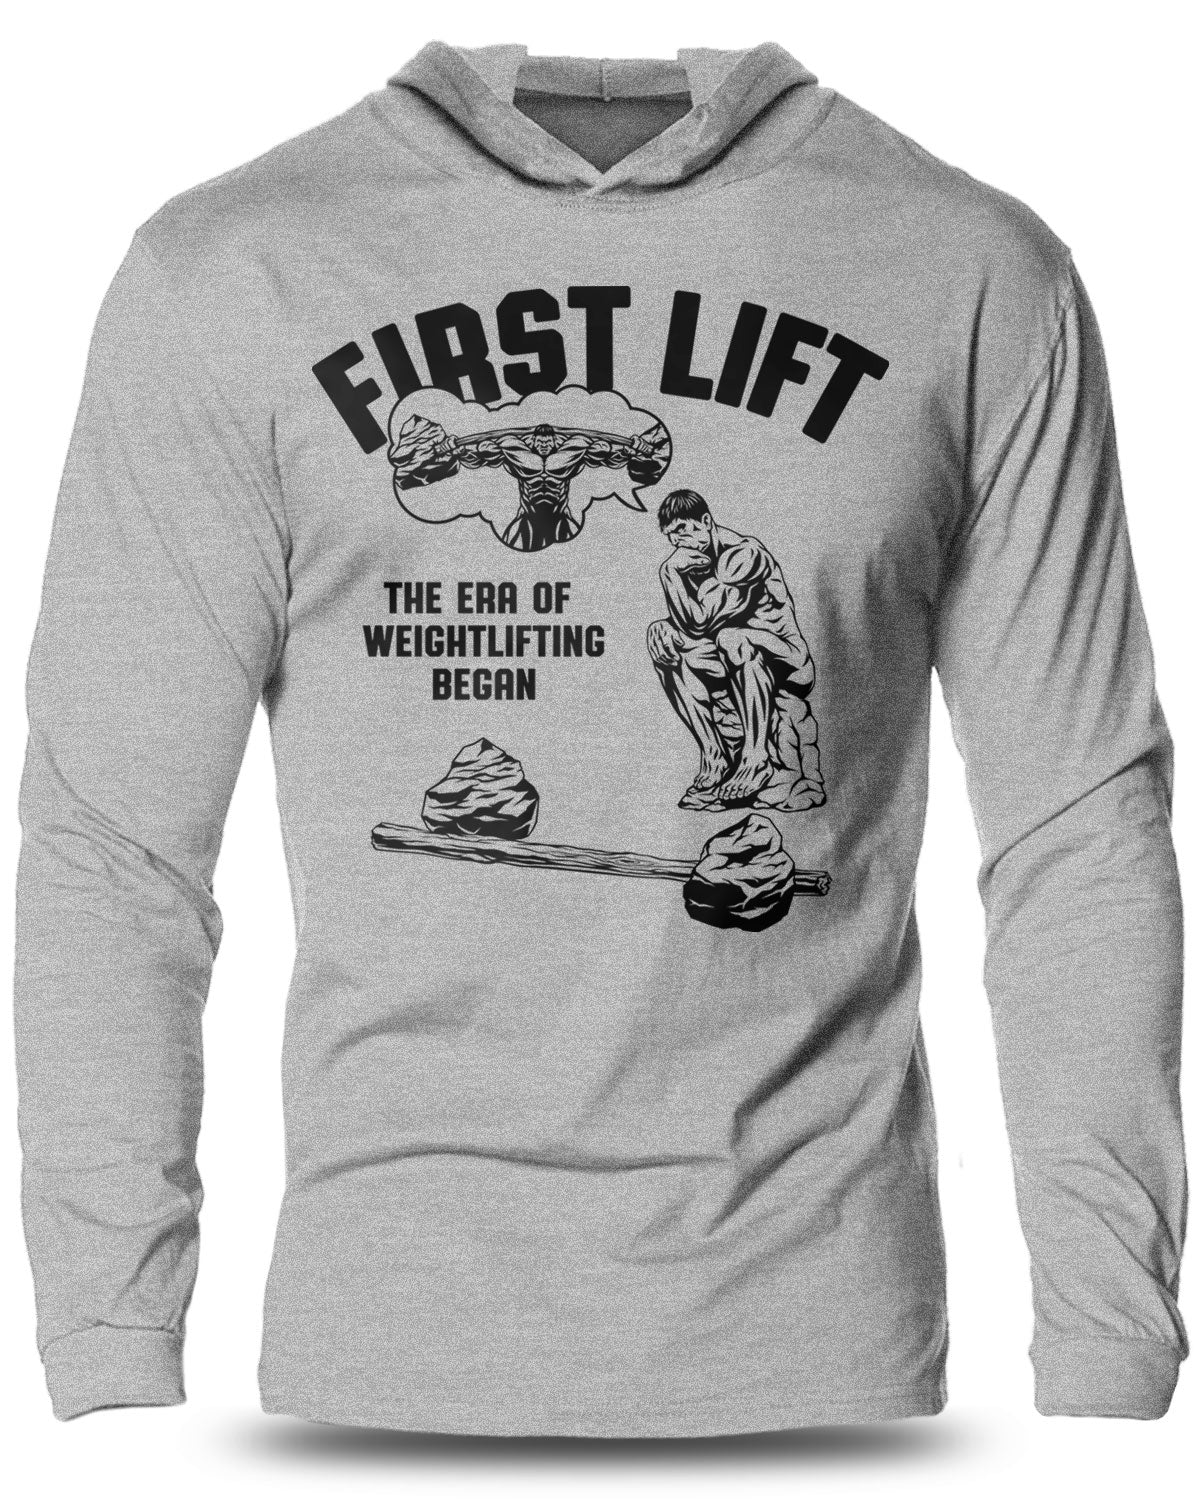 038- First Lift Lightweight Long Sleeve Hooded T-shirt for Men